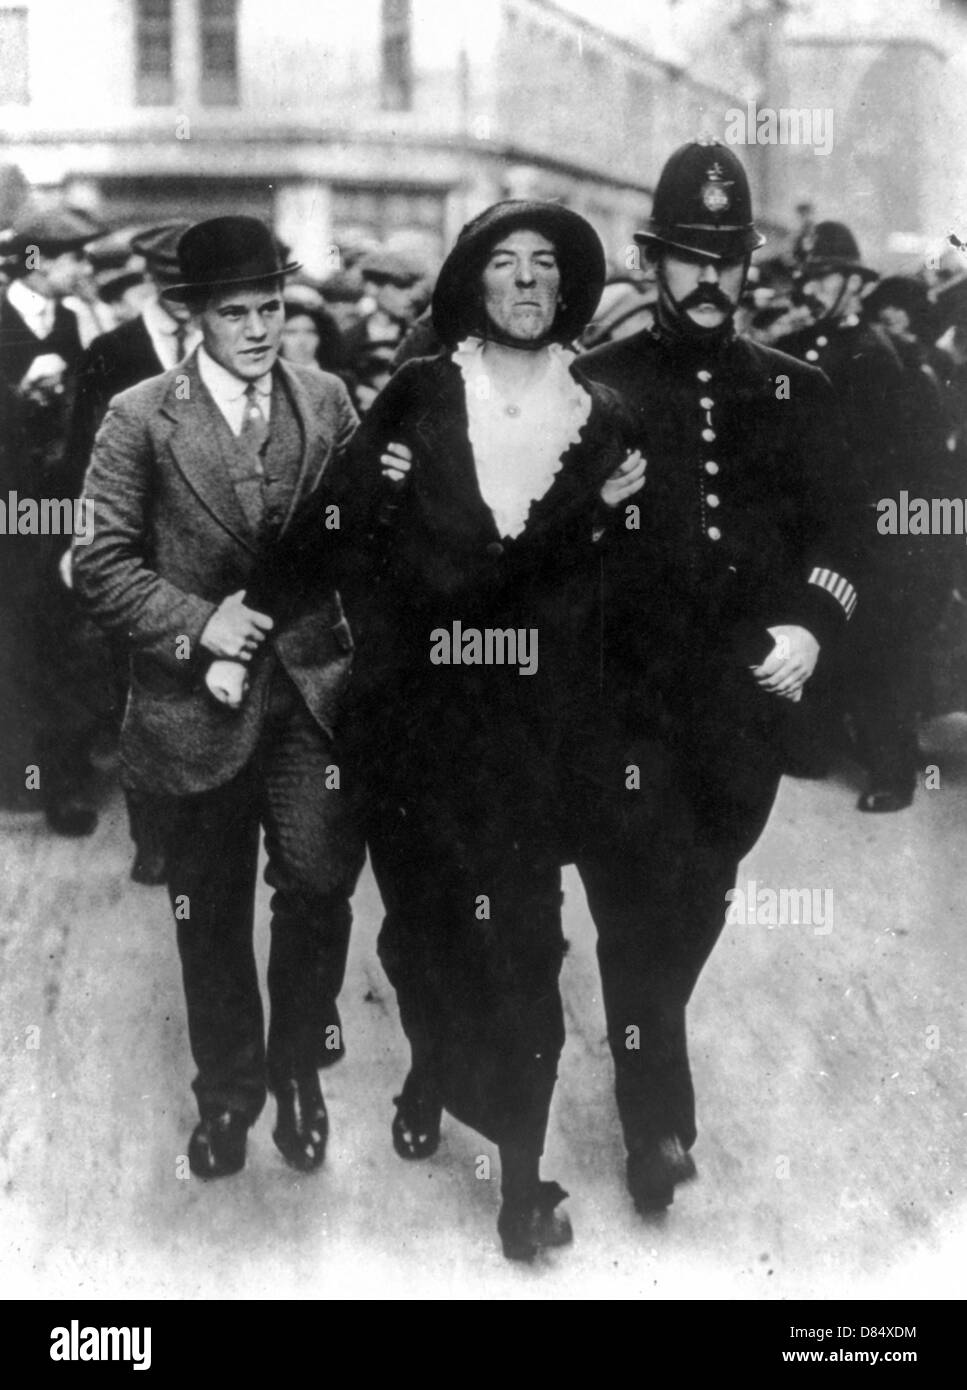 Arrestation par des policiers et des suffragettes de clothesman femme escorte ordinaire, London, UK Banque D'Images